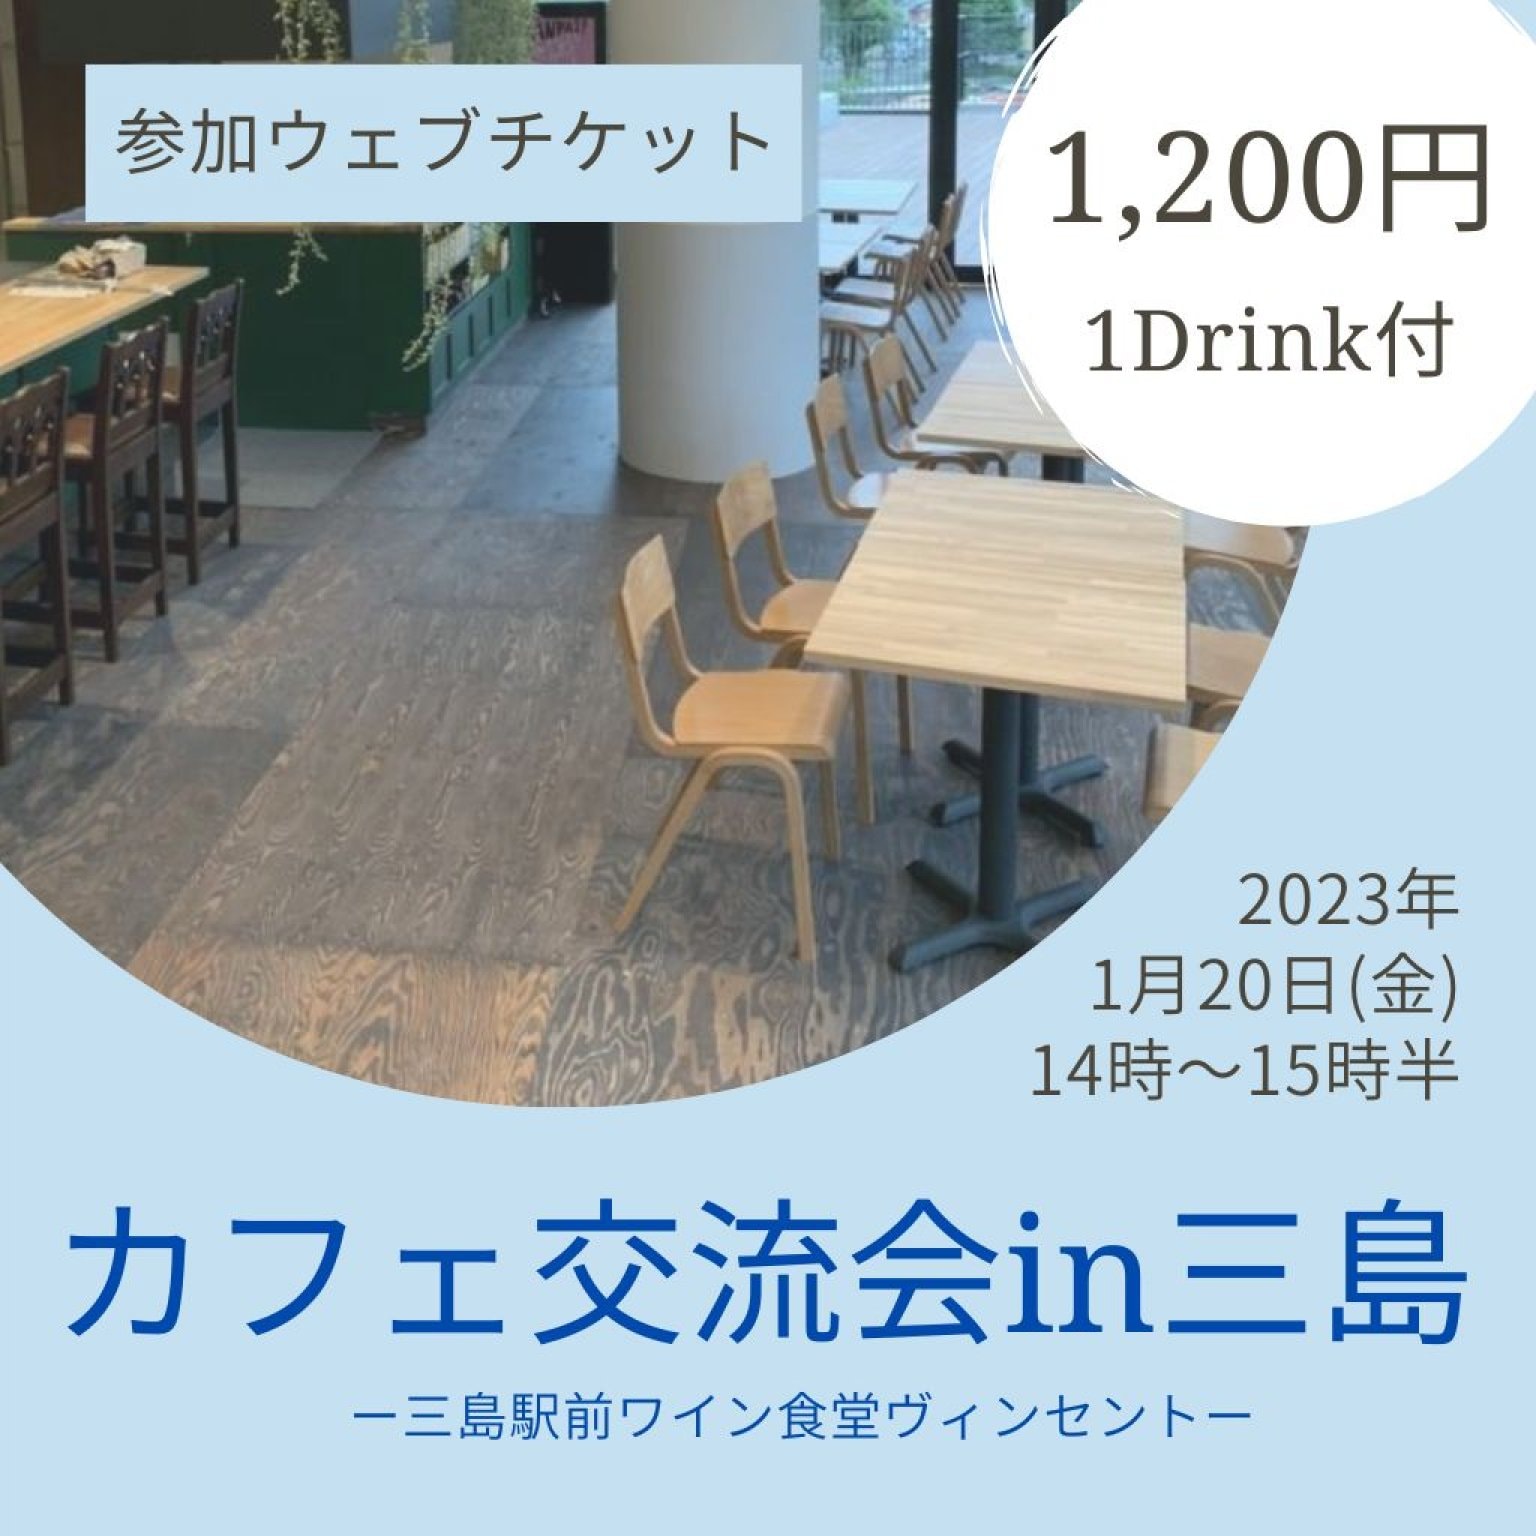 1/20(金)カフェ交流会in三島駅ヴィンセント参加チケット